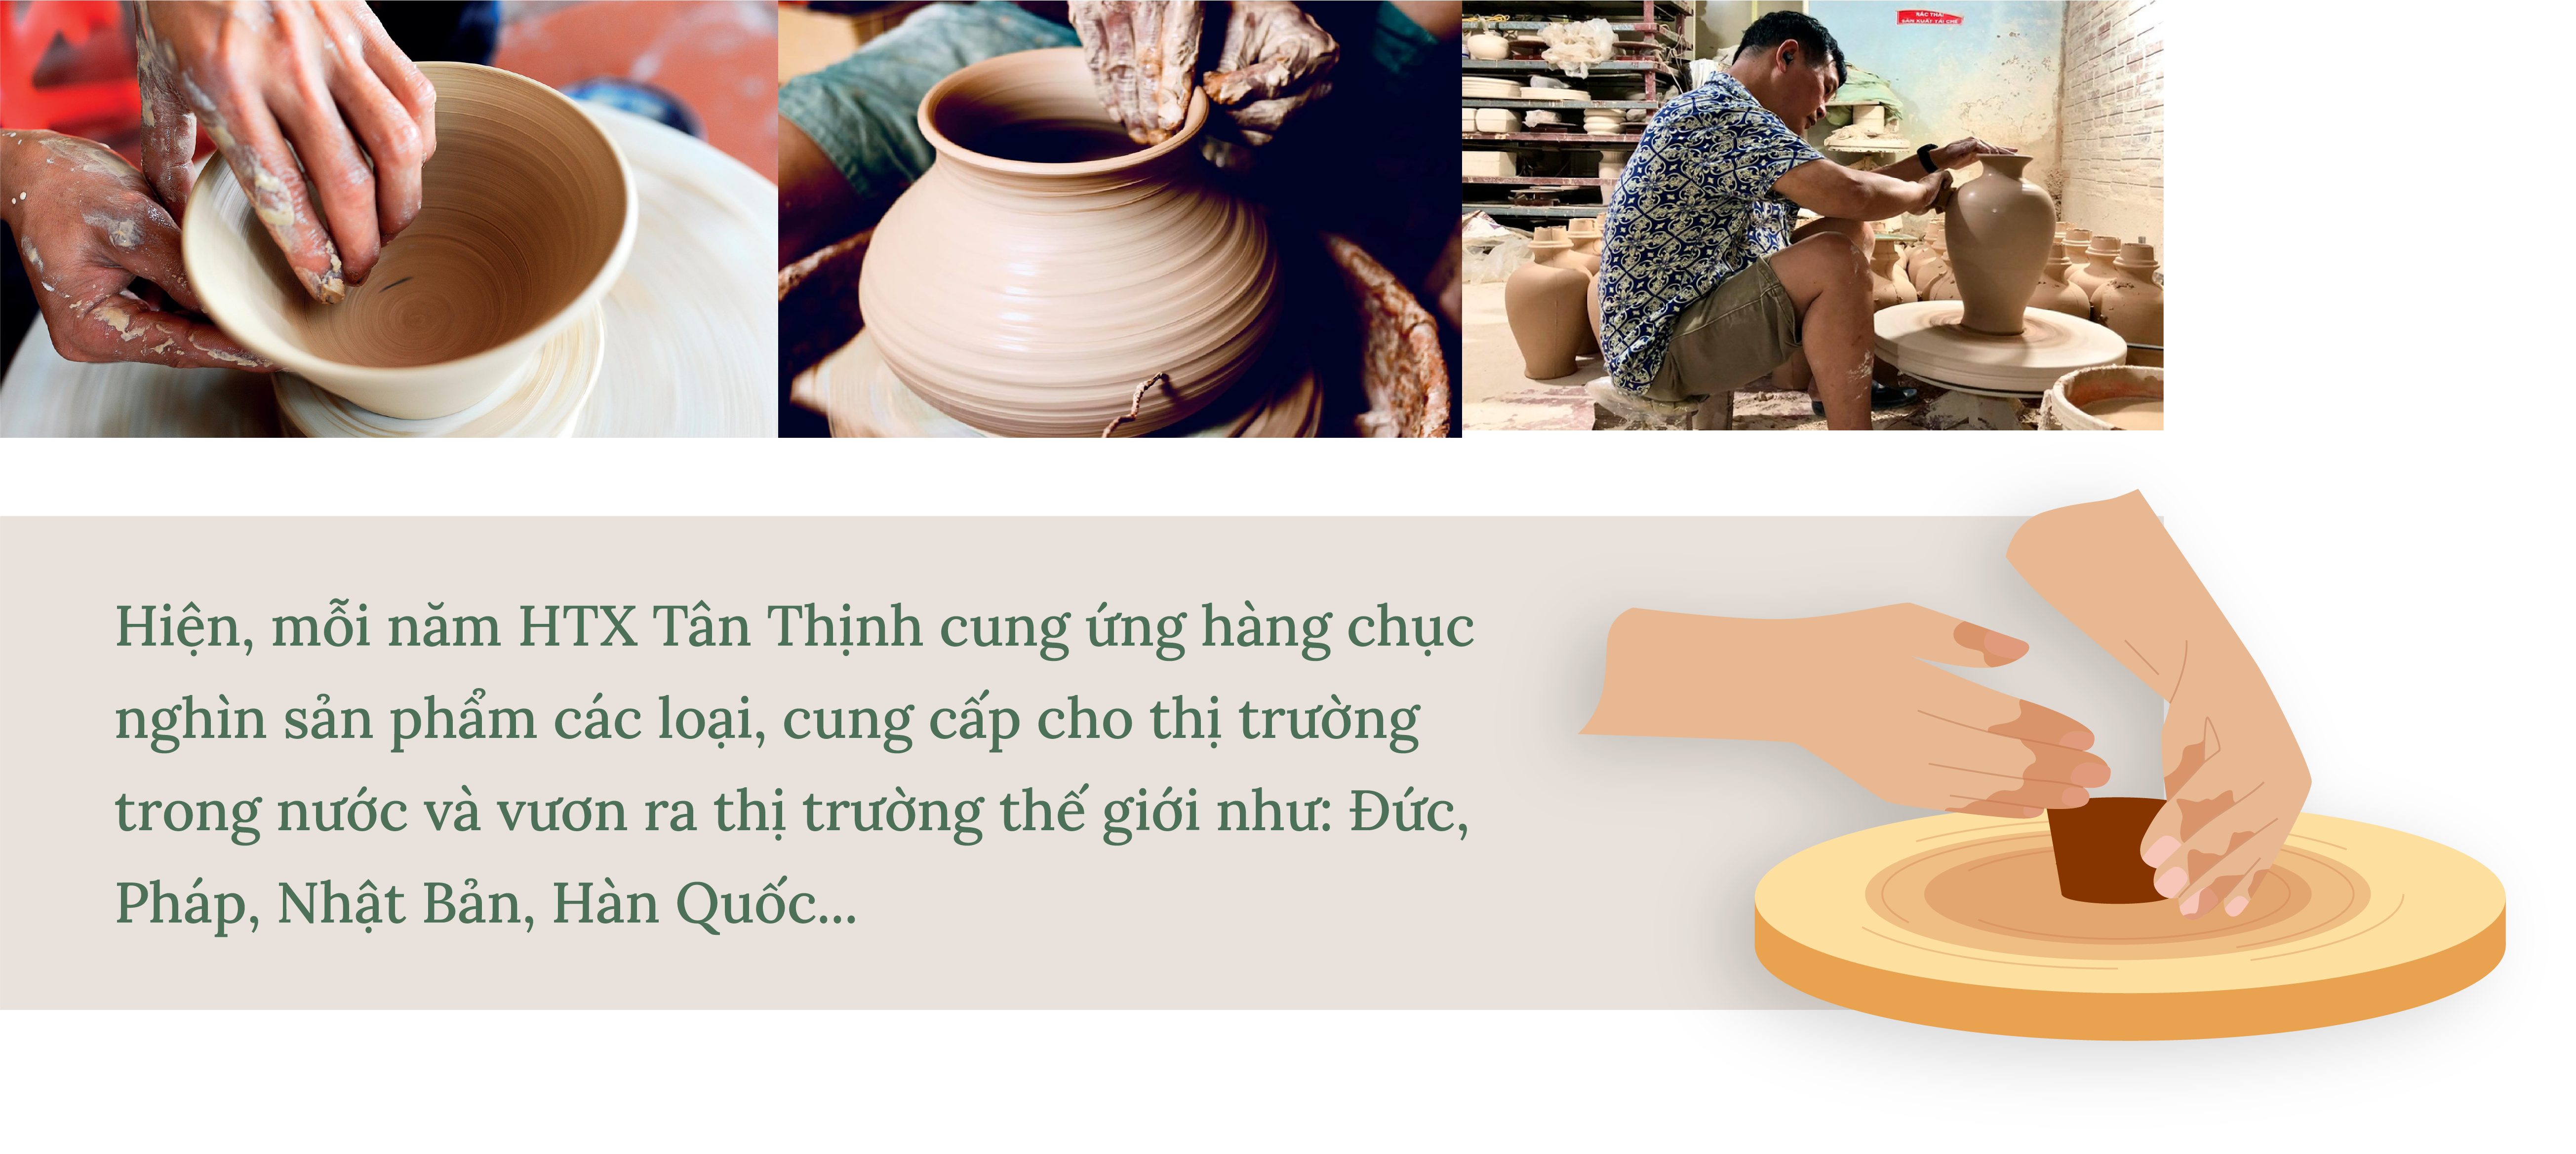 Longform | Gốm sứ Tân Thịnh: Rạng danh sản phẩm OCOP tại làng gốm cổ ven sông